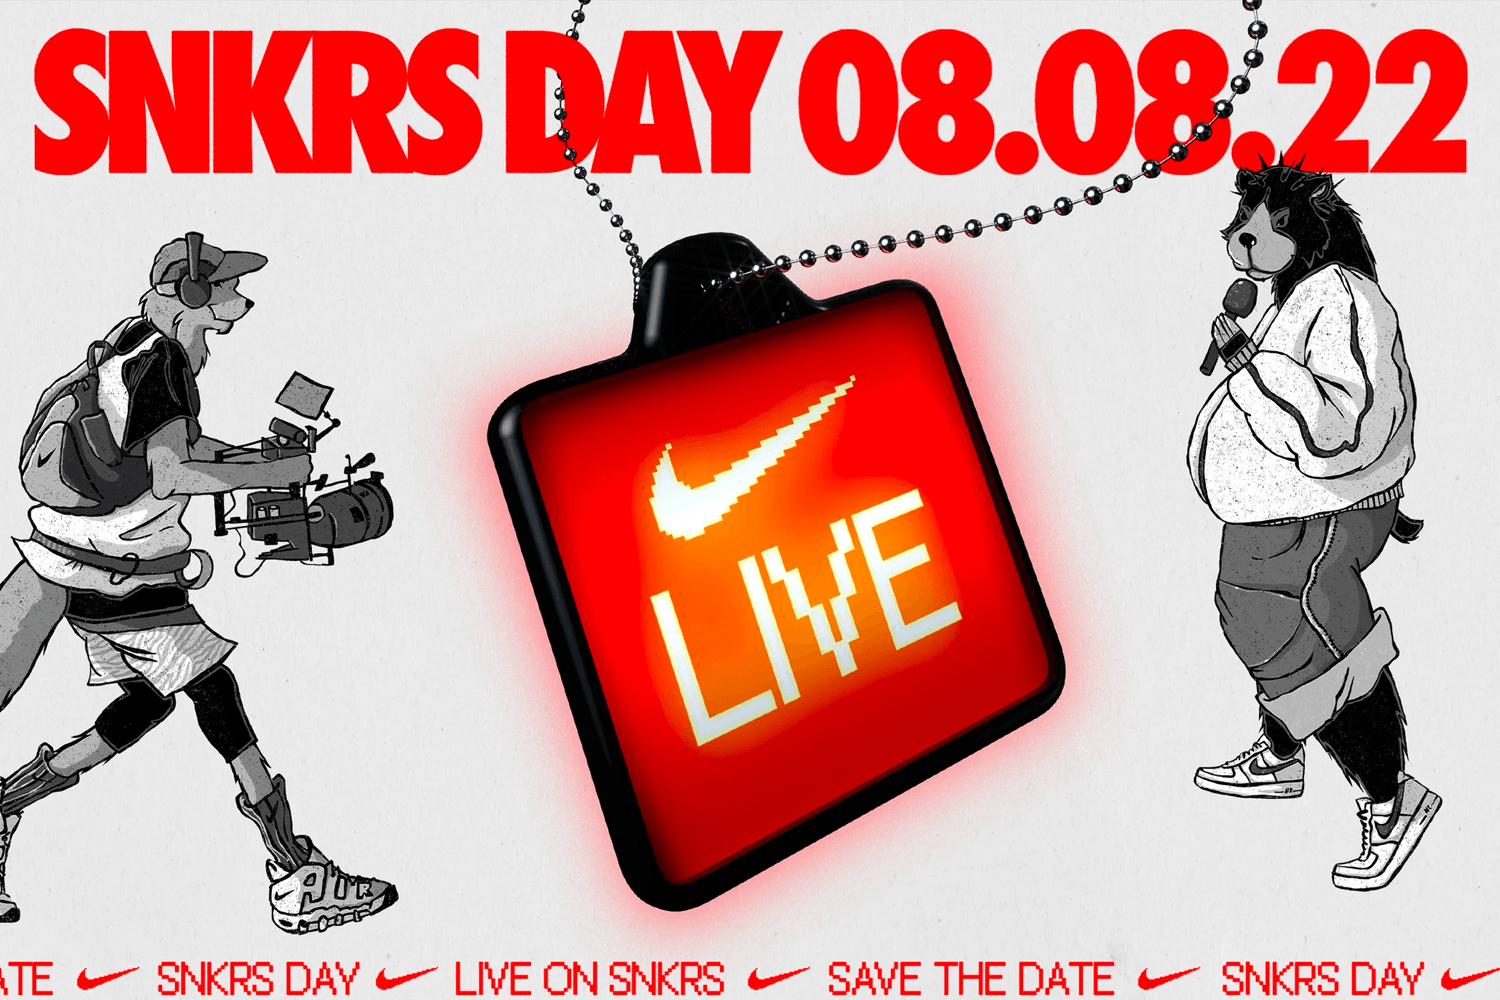 De eerste release tijdens Nike SNKRS Day is bekend